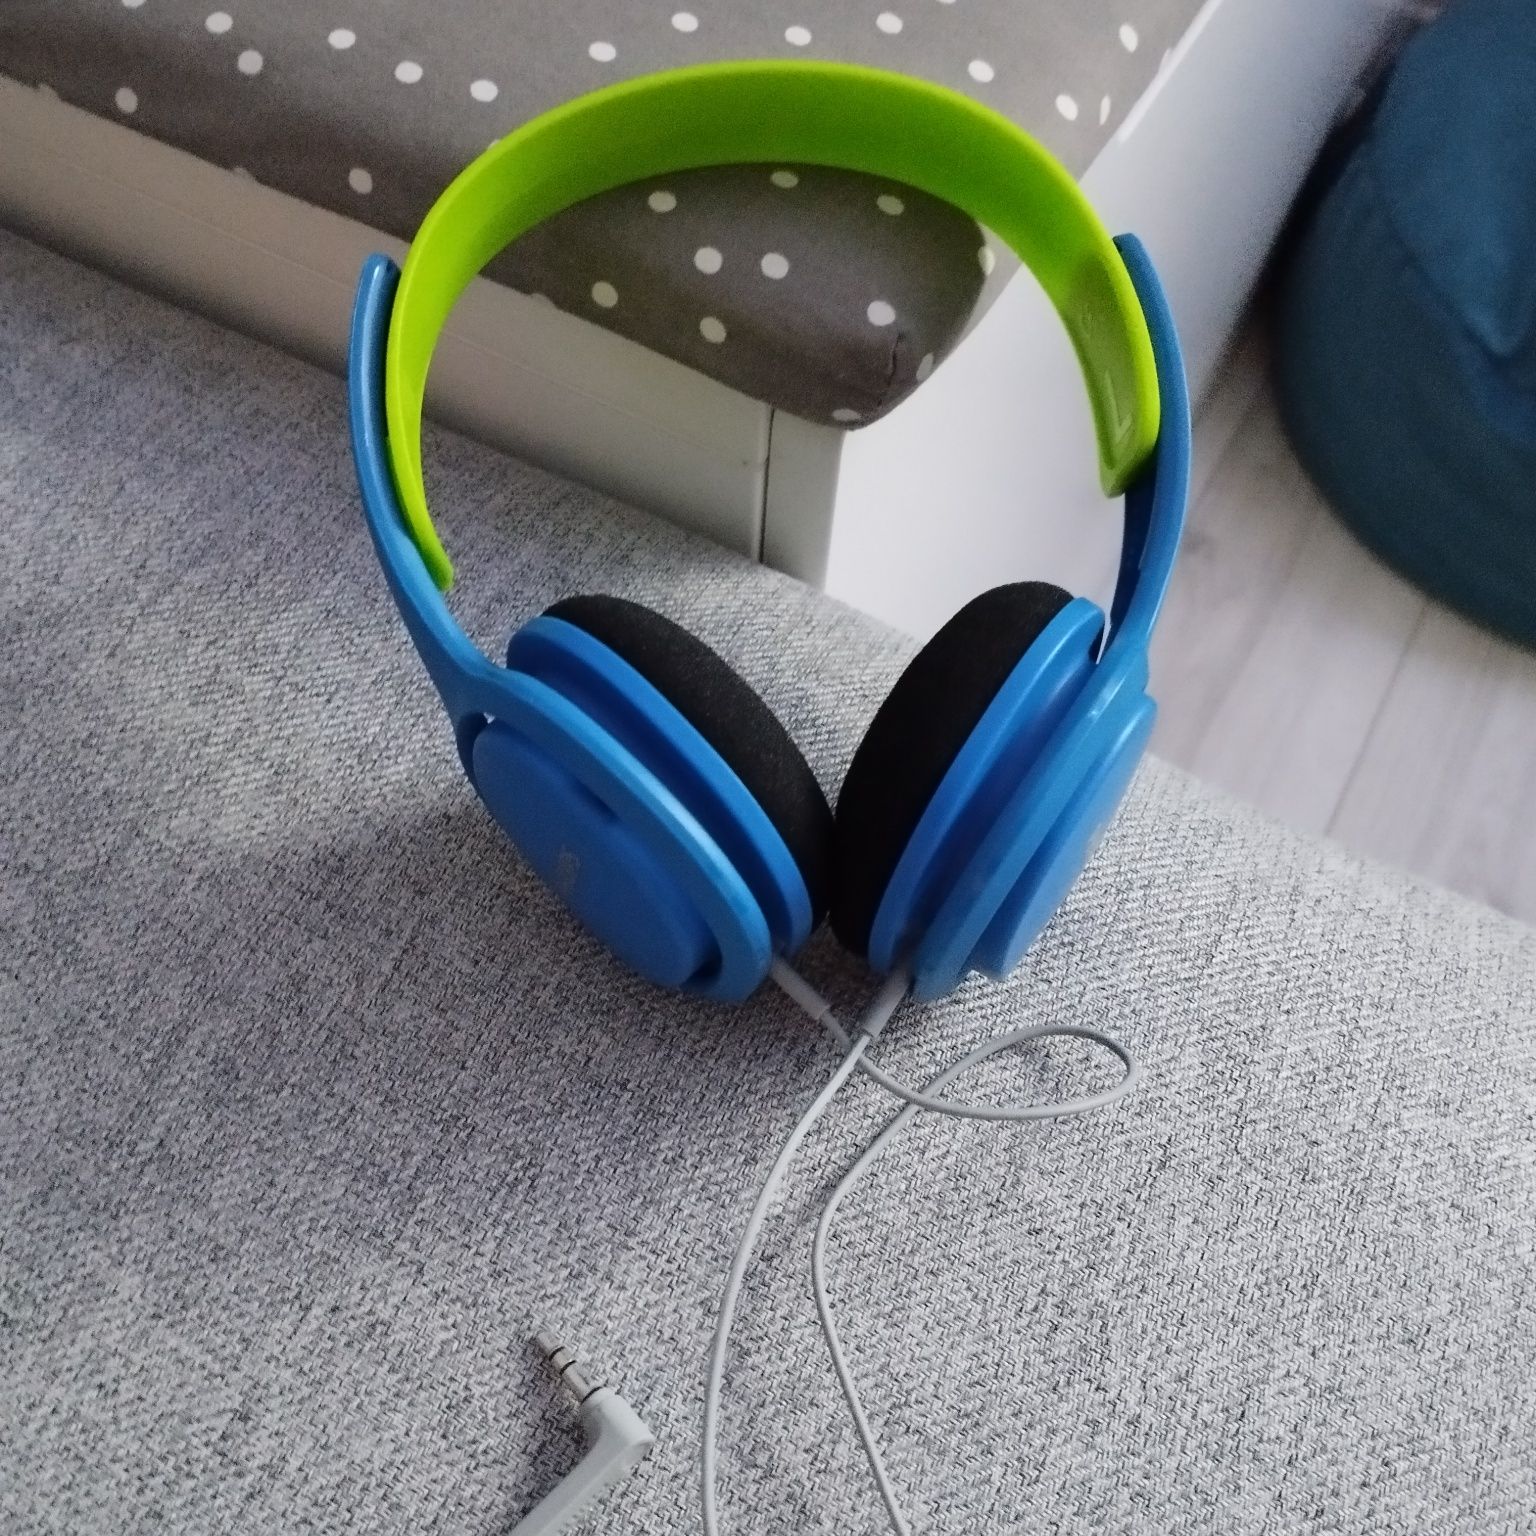 Nowe słuchawki Philips dla dziecka